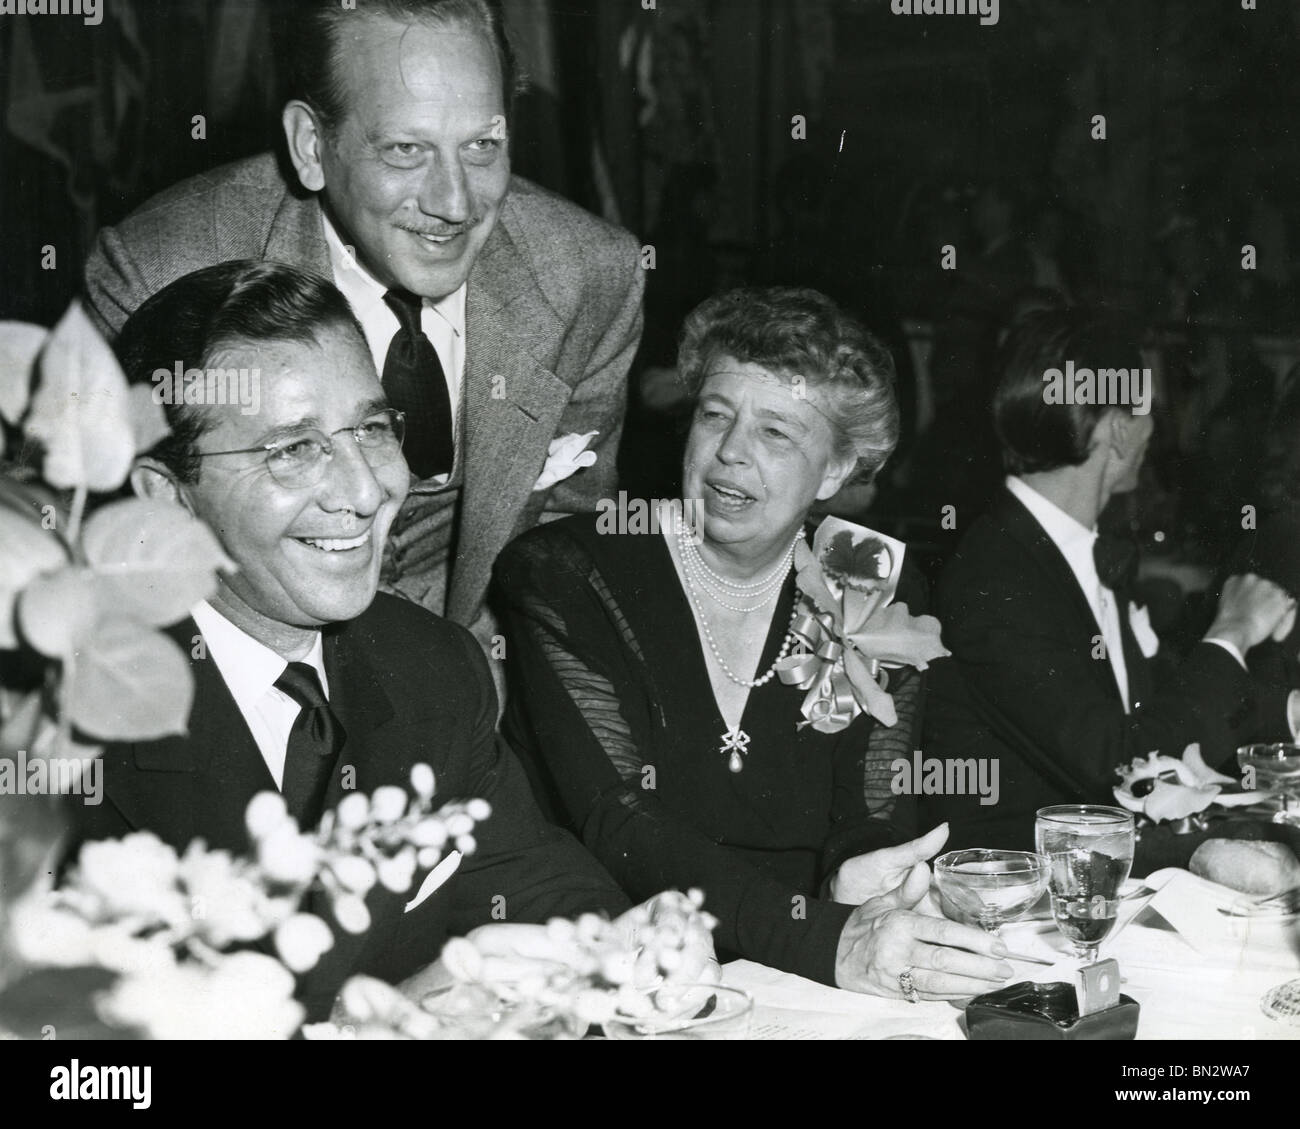 ELEANOR ROOSEVELT neben Frank Sinatra (rechts) in einem Film Führungskräfte treffen um 1950 Stockfoto